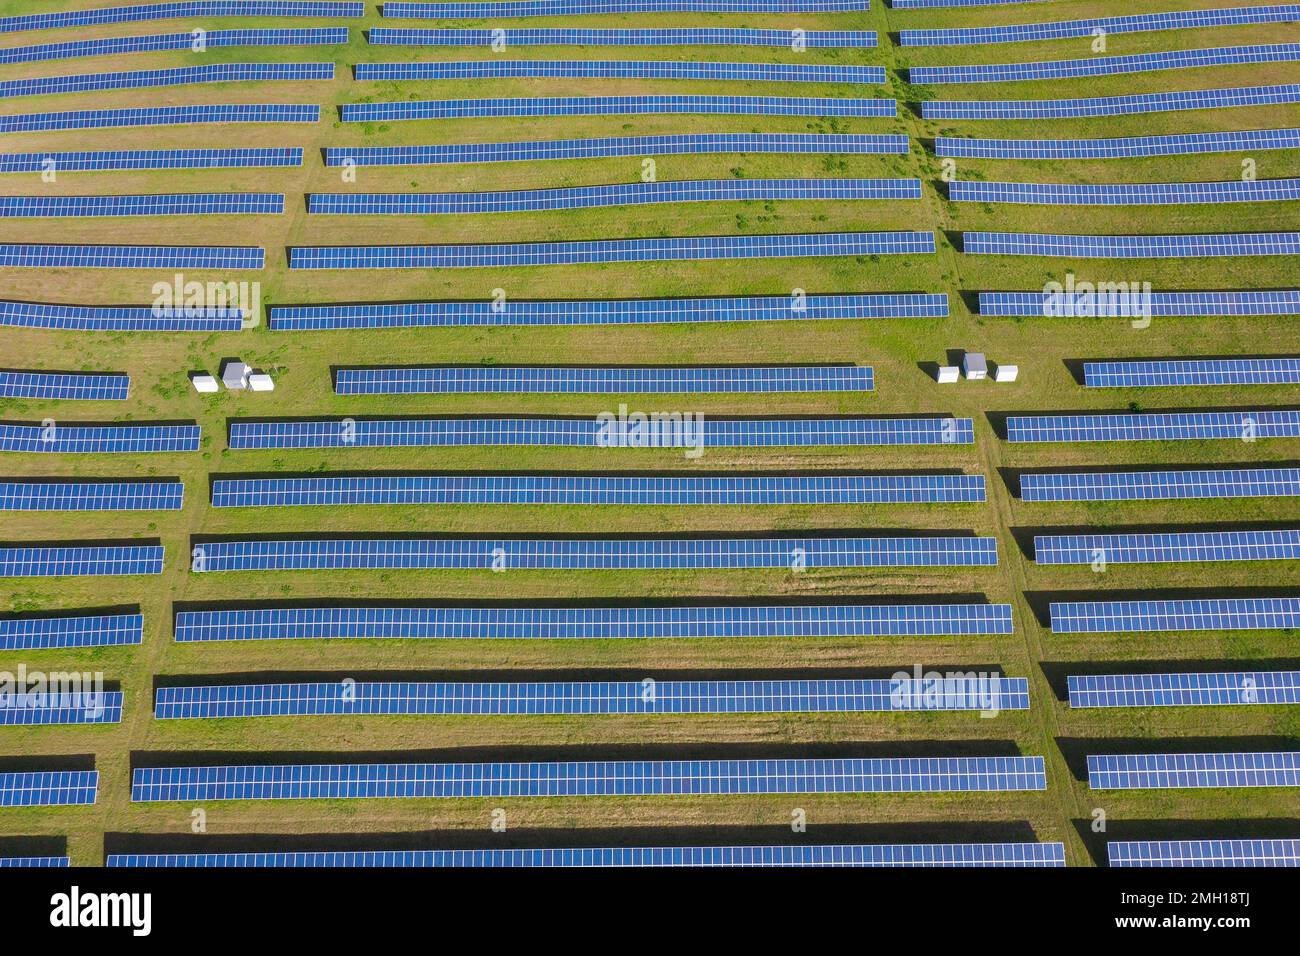 Luftaufnahme der Solarpaneele des Photovoltaik-Kraftwerks/Solarparks für die Stromversorgung, Mecklenburg-Vorpommern, Deutschland Stockfoto